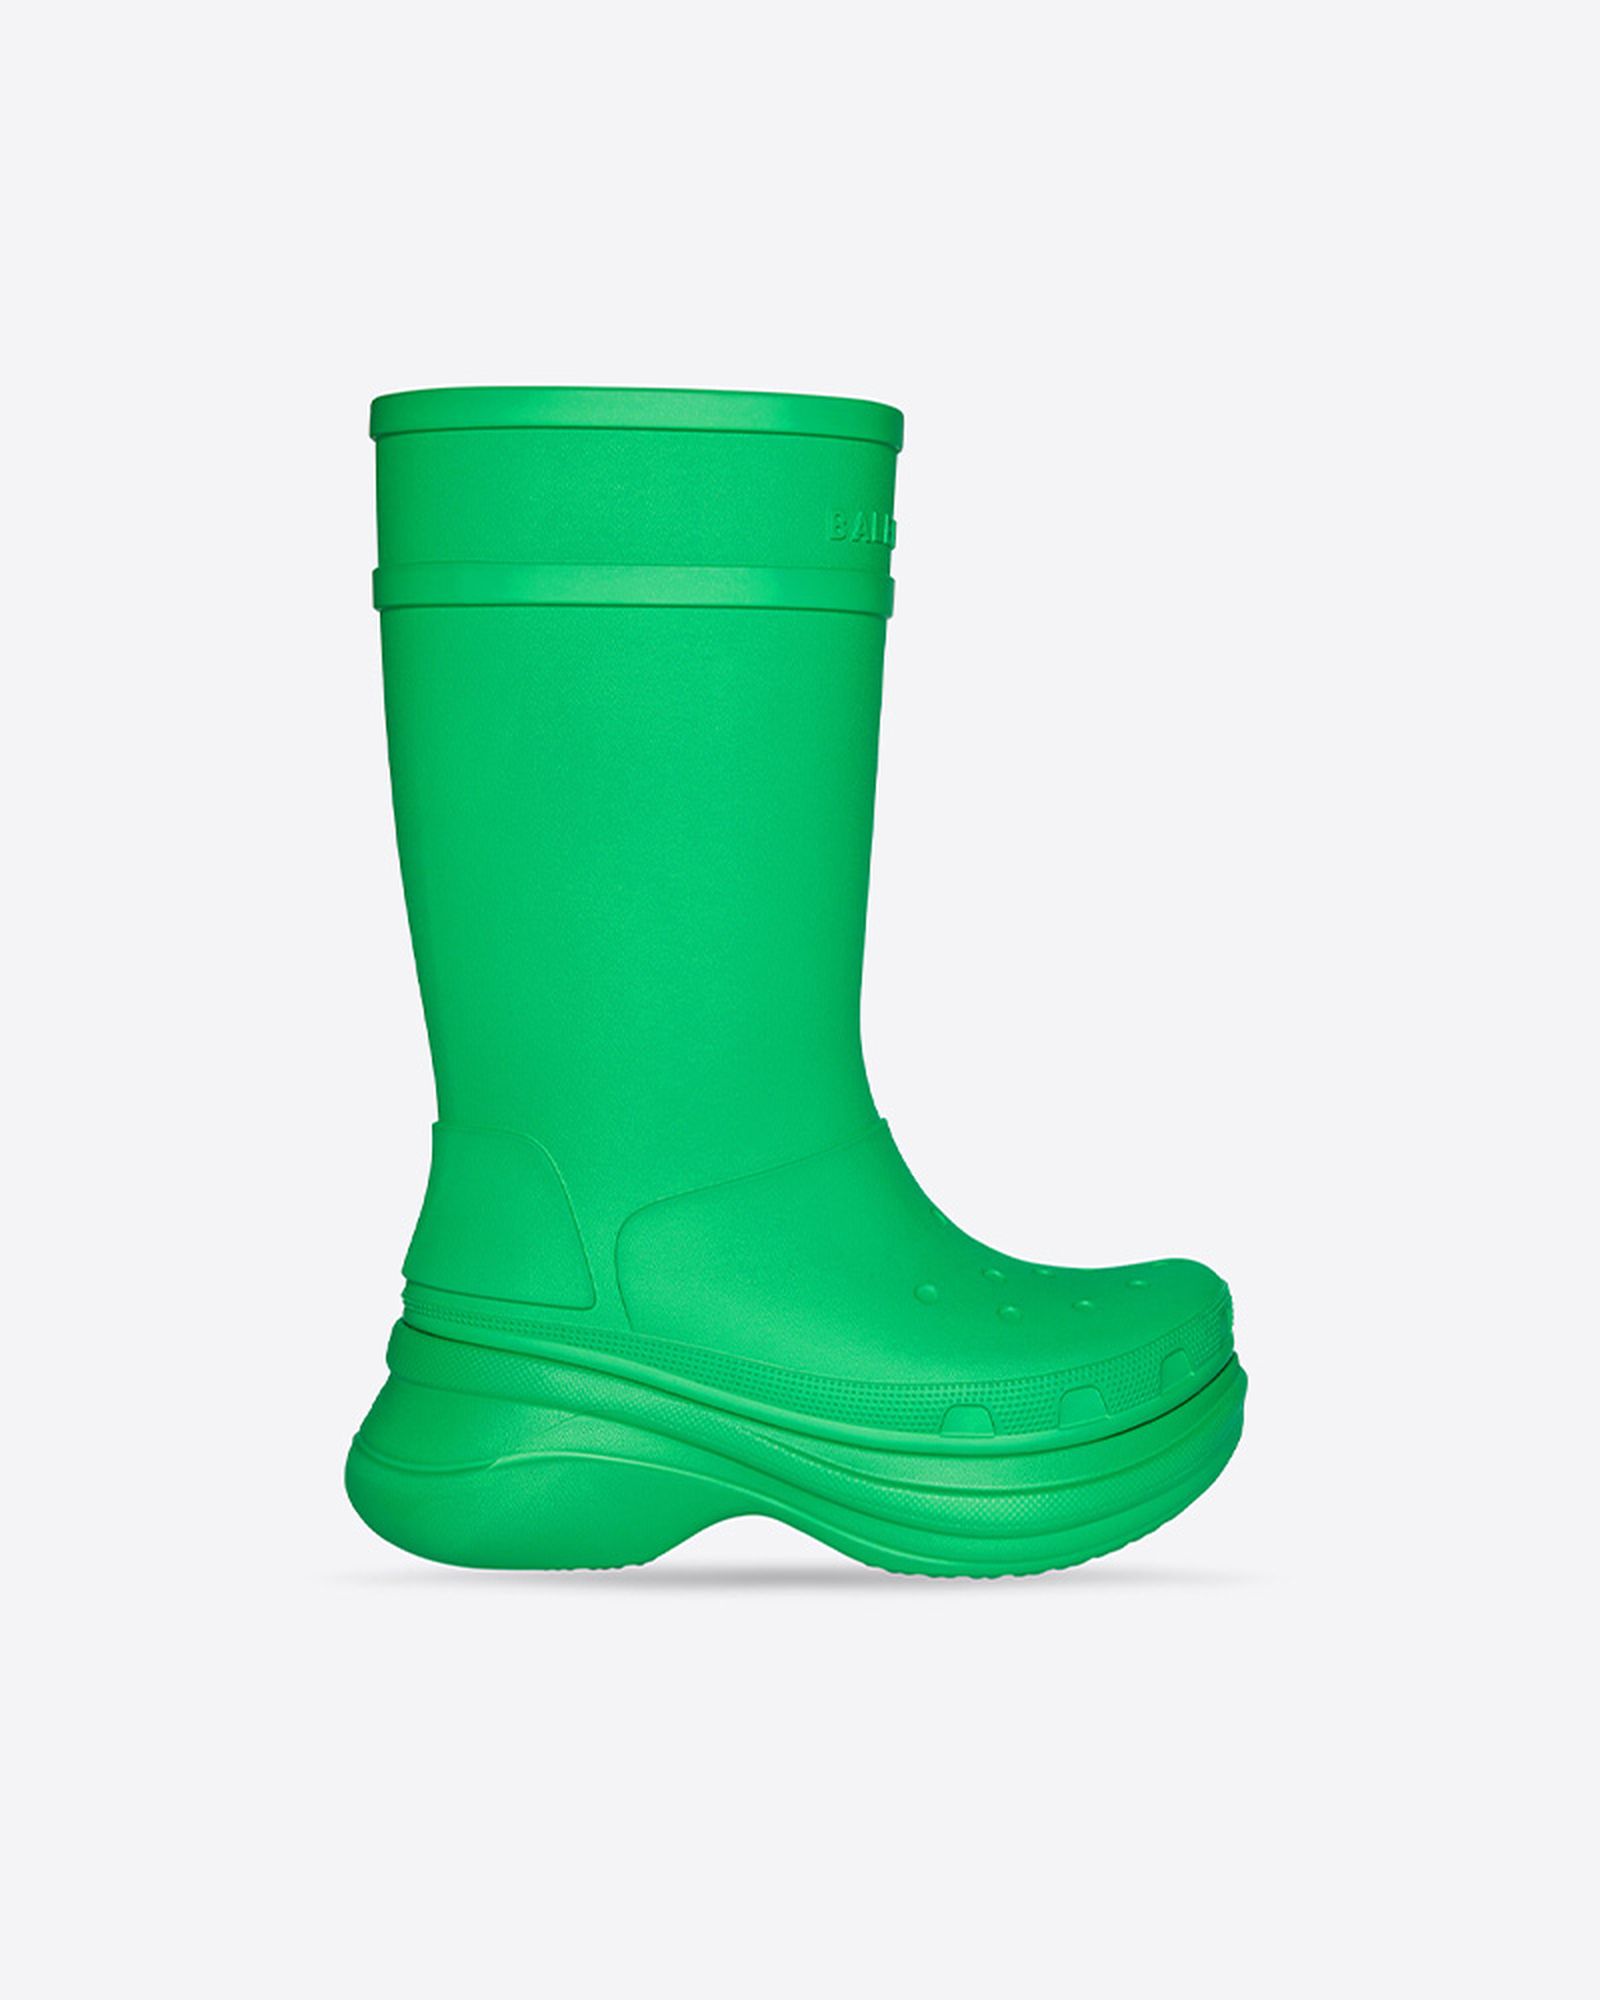 Crocs Rain Boots Review | vlr.eng.br